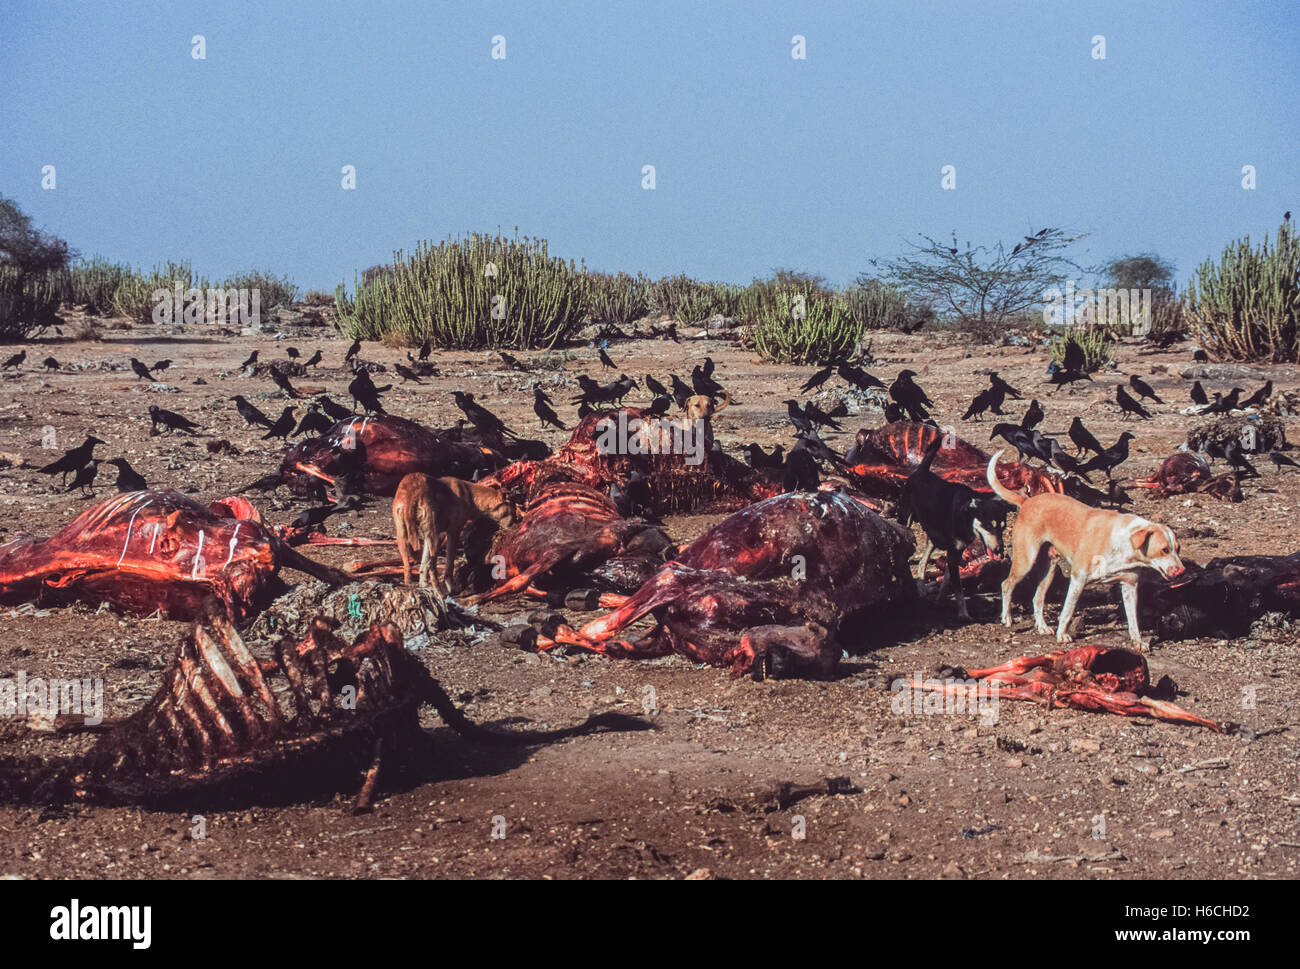 Les chiens sauvages,(Canis familiaris), des carcasses d'ongulés de récupération des déchets animaux à déverser dans le Rajasthan, Inde,en l'absence de vautours Gyps. Banque D'Images